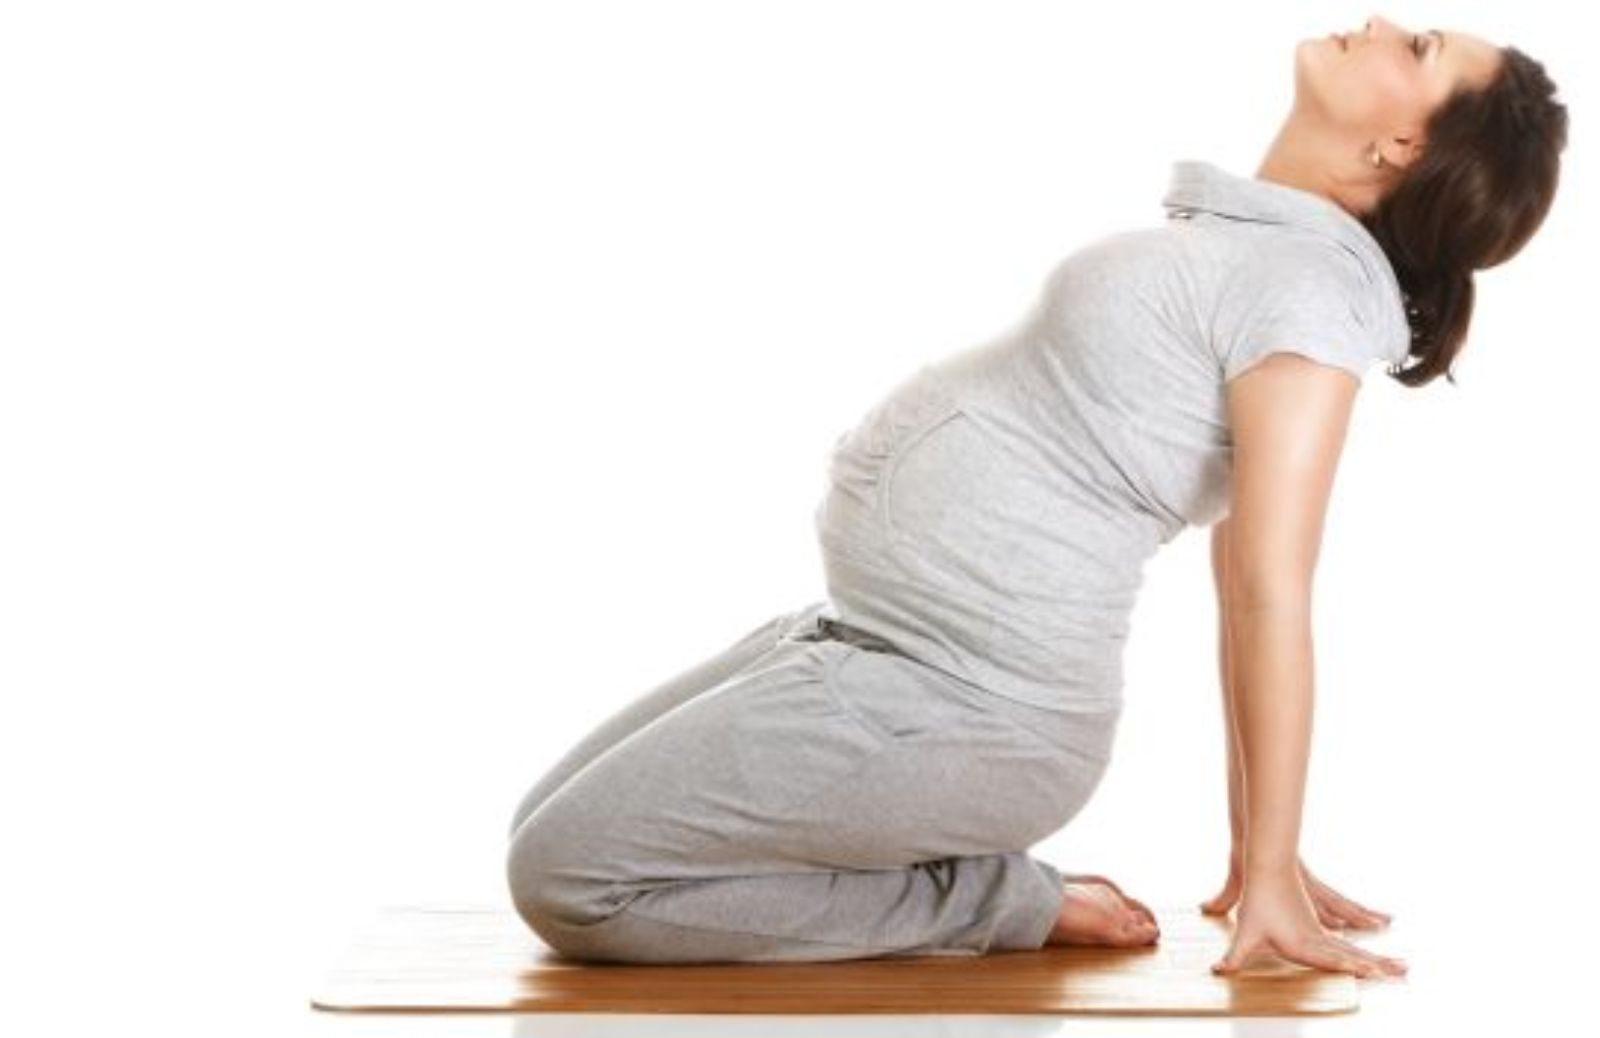 Come fare pilates in gravidanza: schiena - terzo trimestre